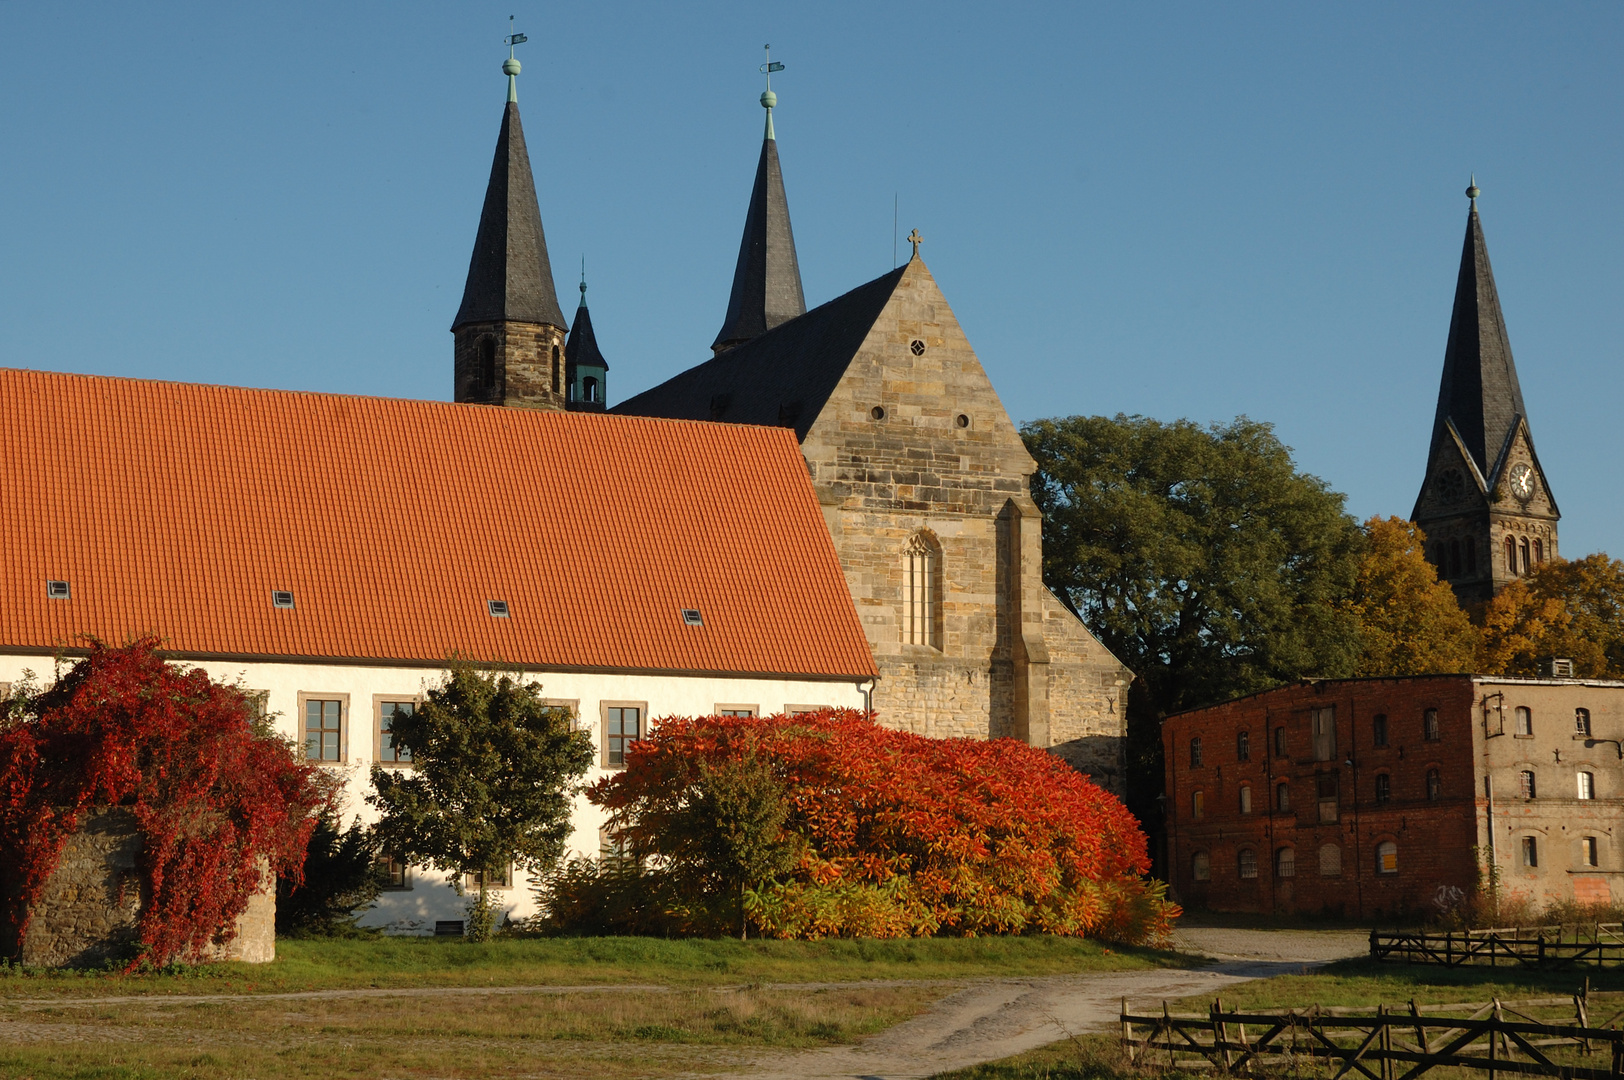 Herbst auf dem Klosterhof